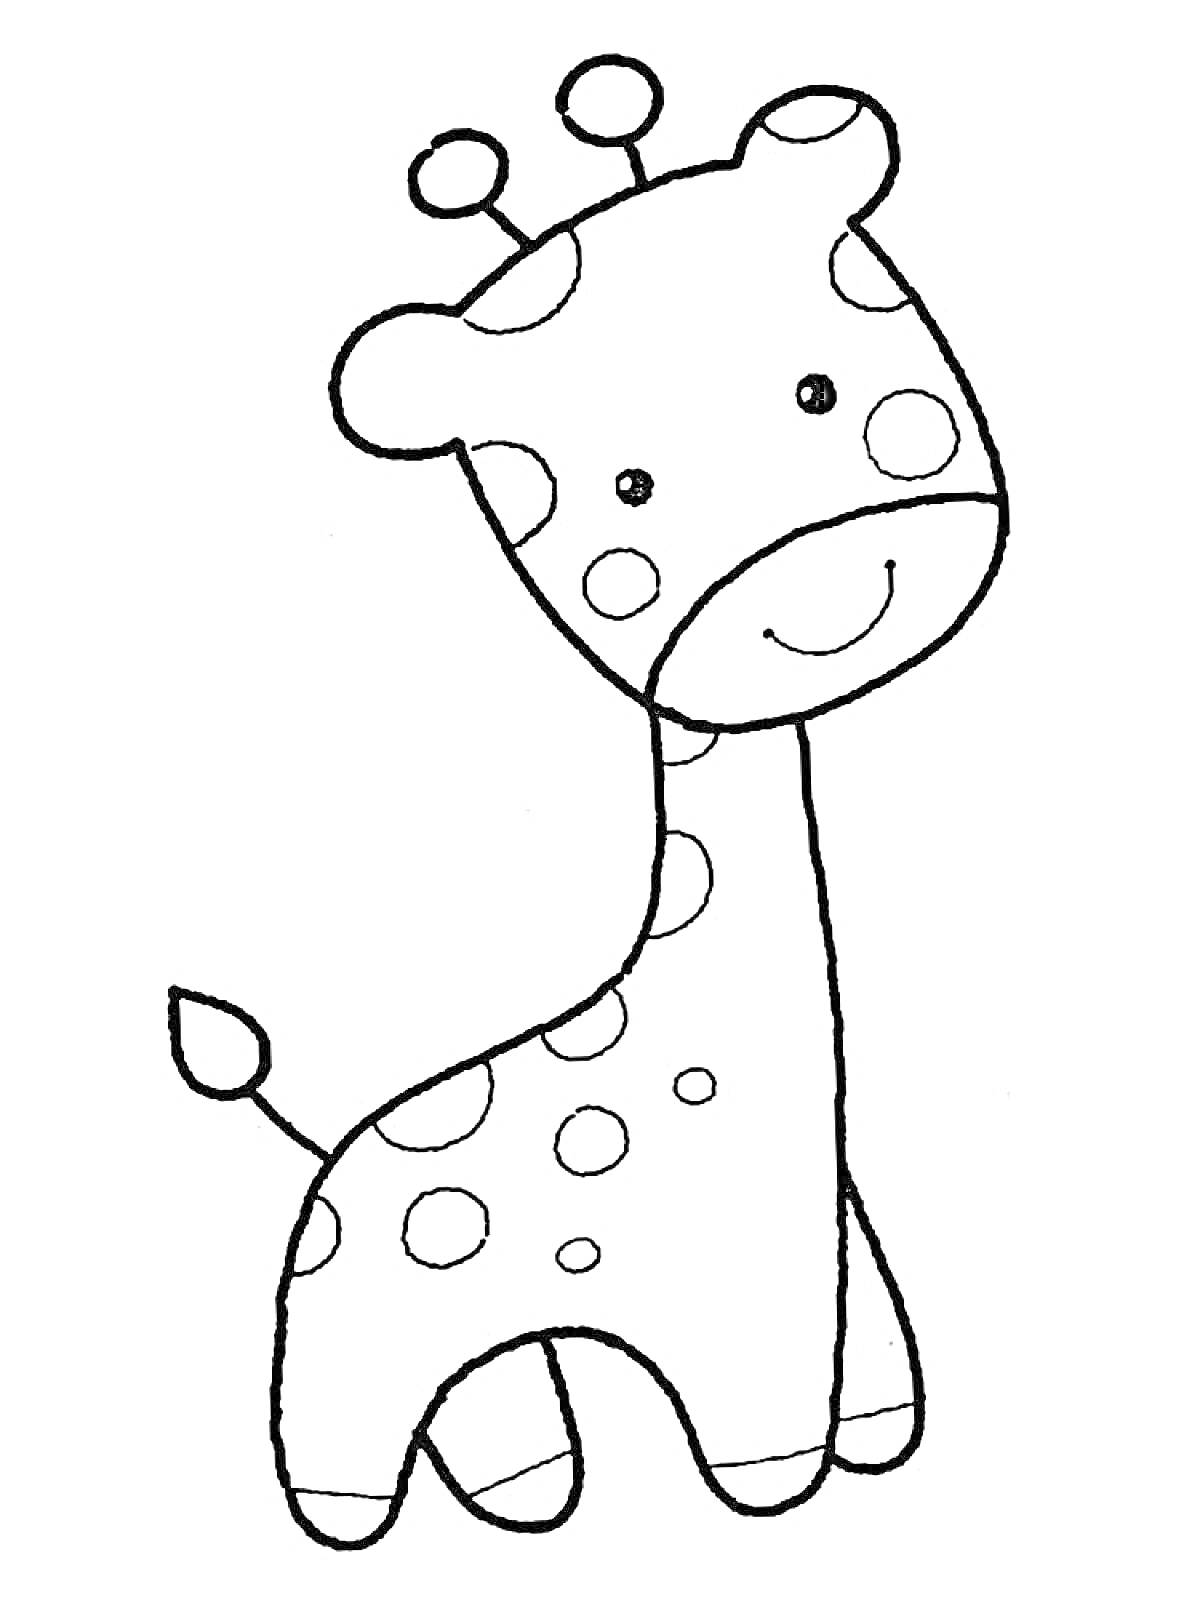 Раскраска Жираф с пятнами, улыбающийся, детская раскраска